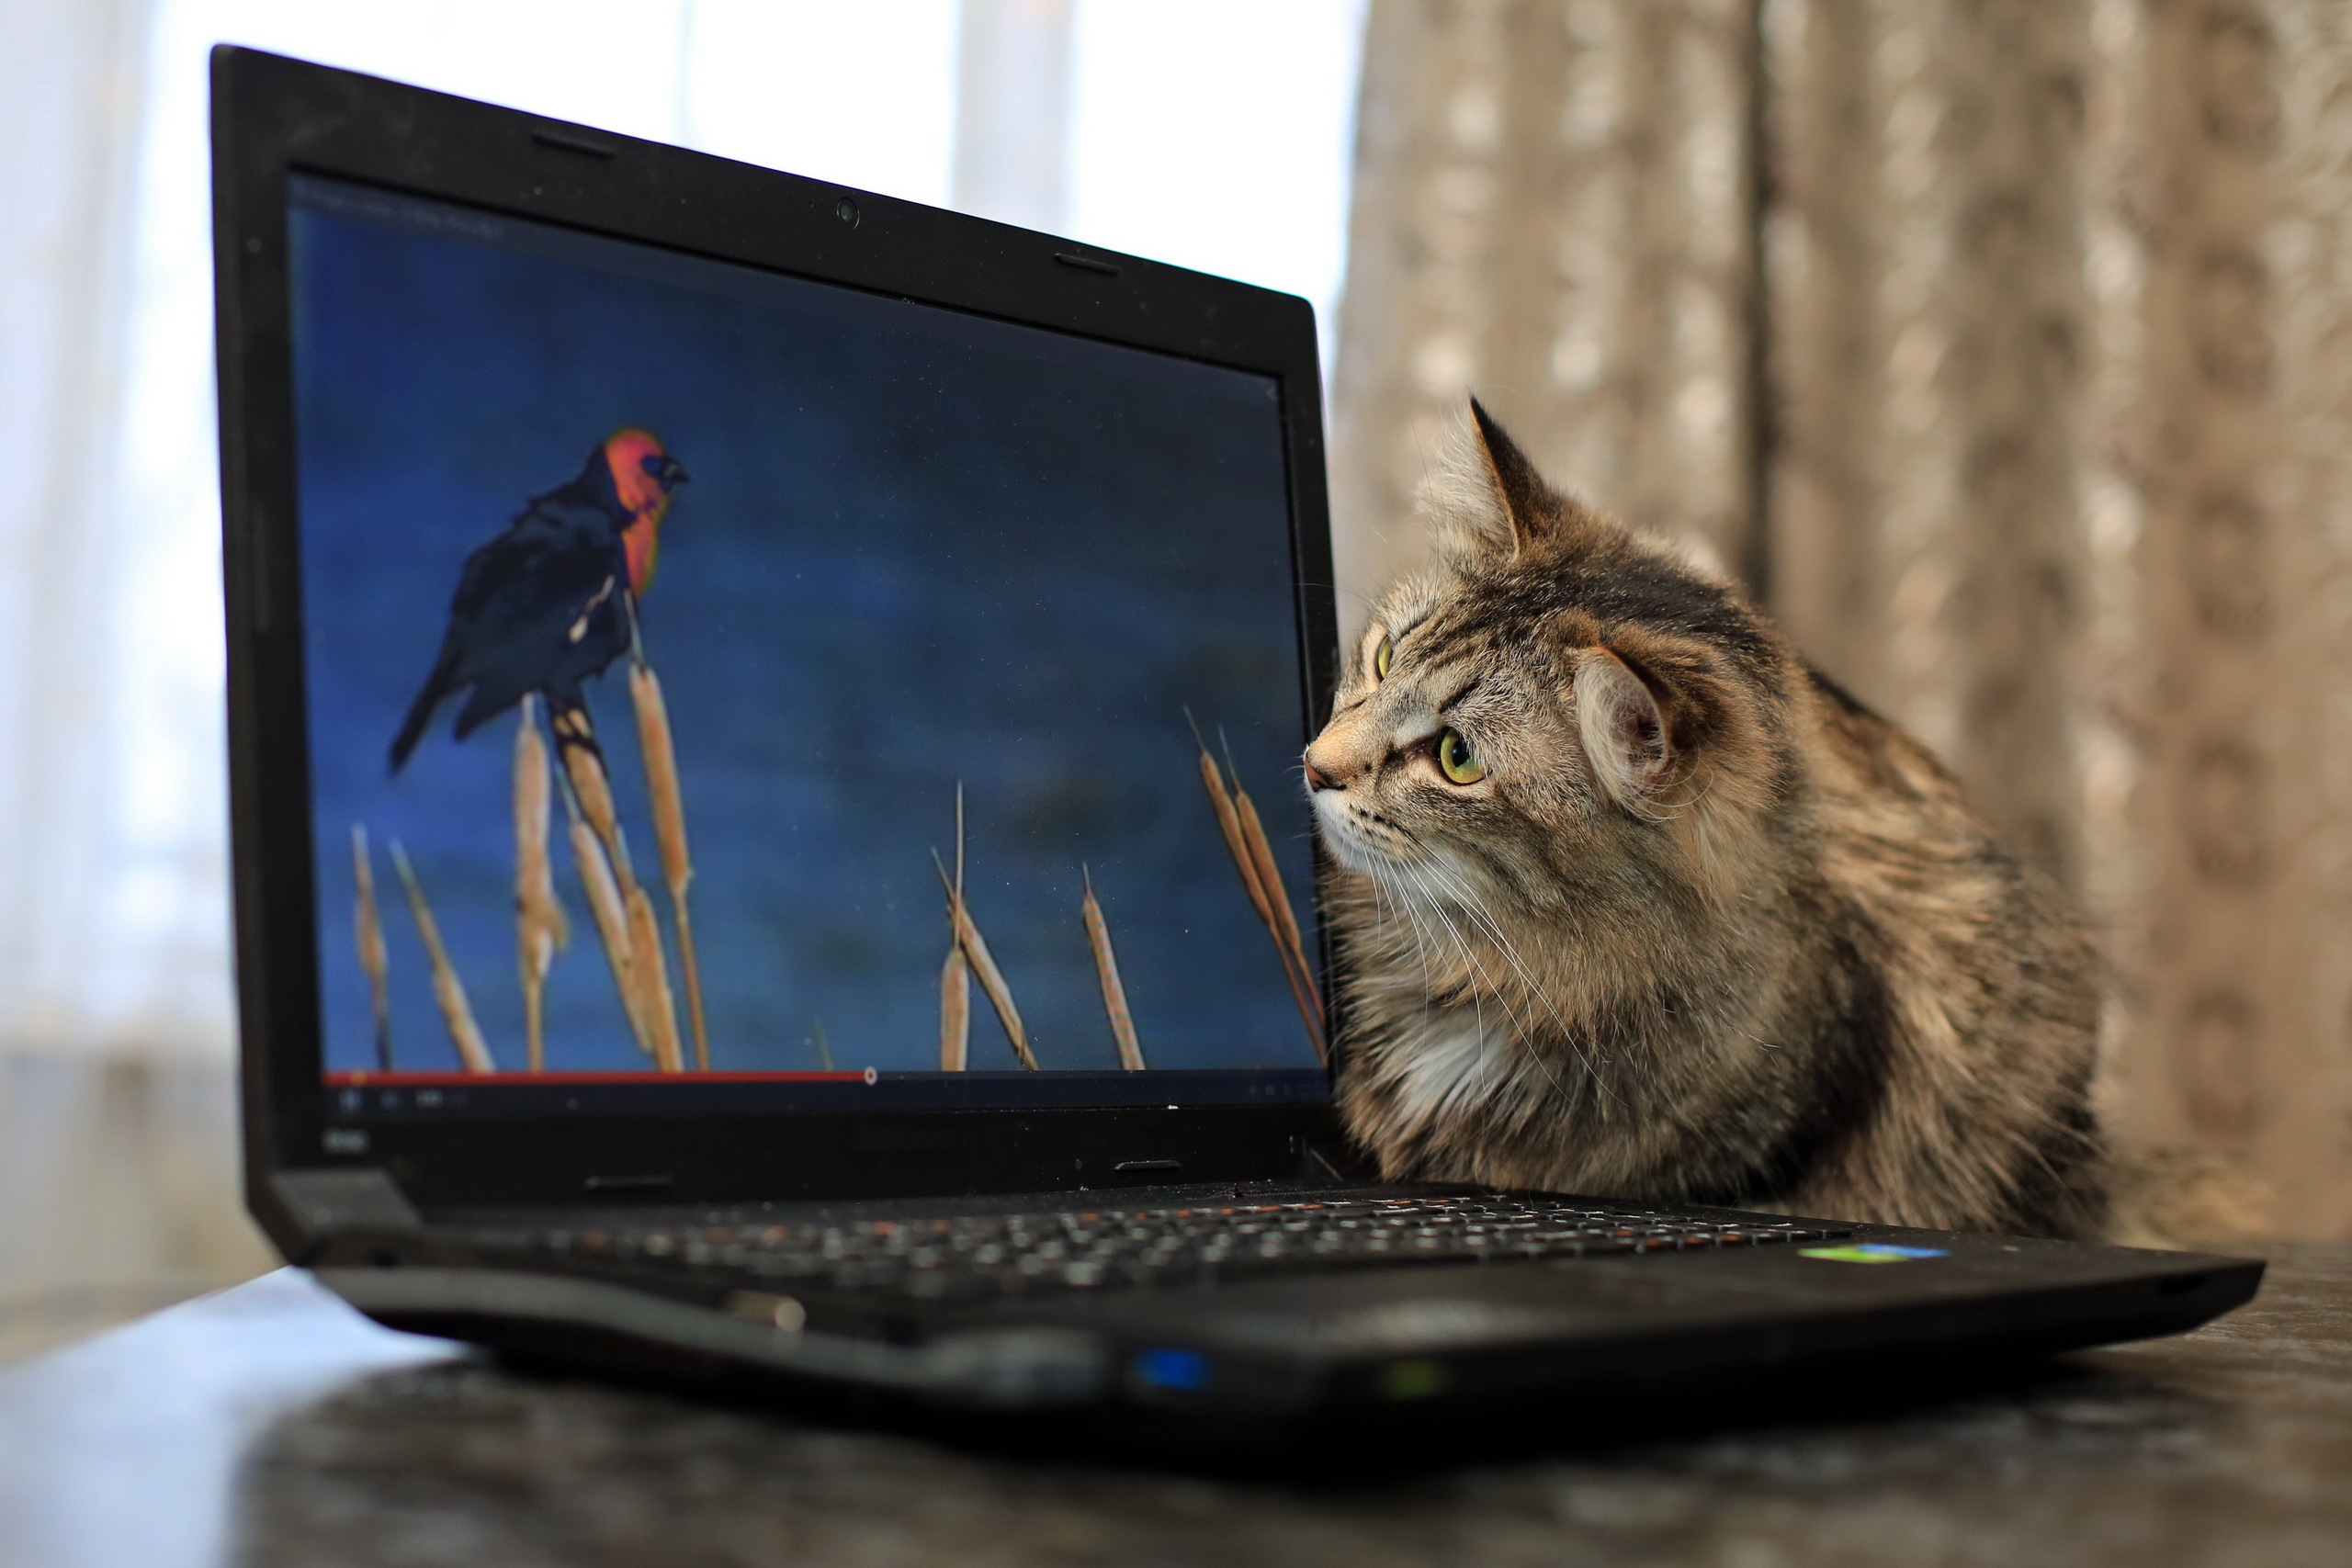 Картинка на монитор ноутбука. Кошка с ноутбуком. Котик с компьютером. Кот и телевизор. Коты и компьютеры.